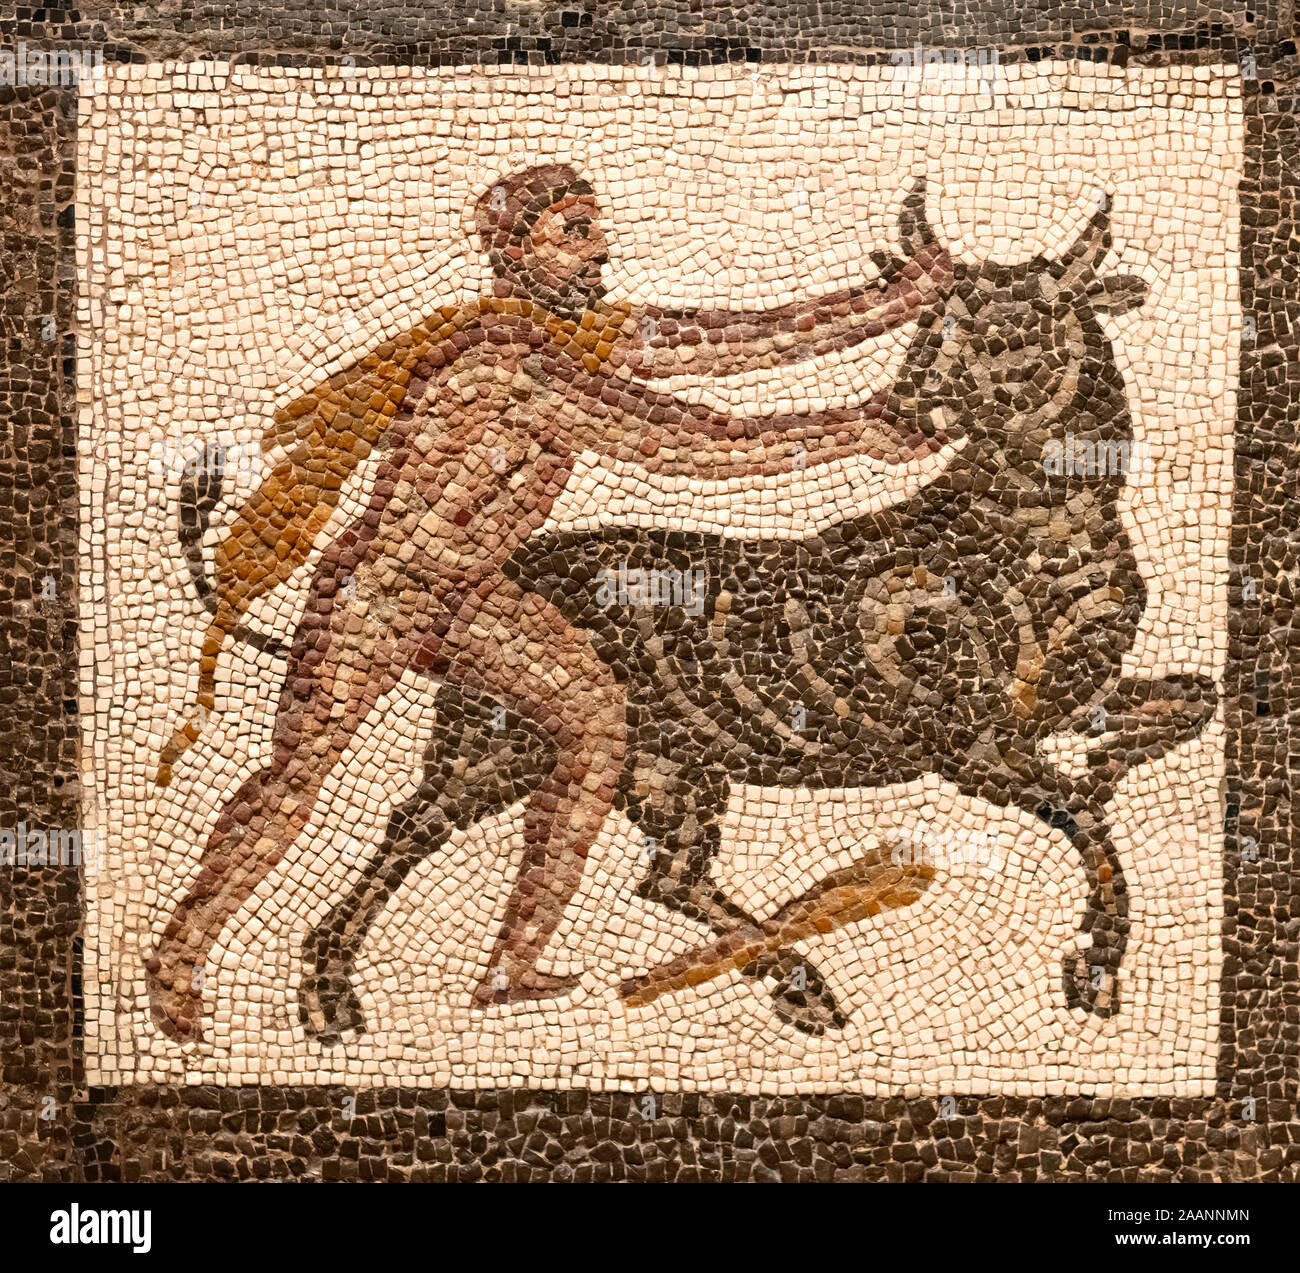 Mosaik, der eine Gott Herkules im Kampf mit einem Stier, Abbildung in  brauner Farbe auf einem kleinen weißen Fliesen Hintergrund Stockfotografie  - Alamy